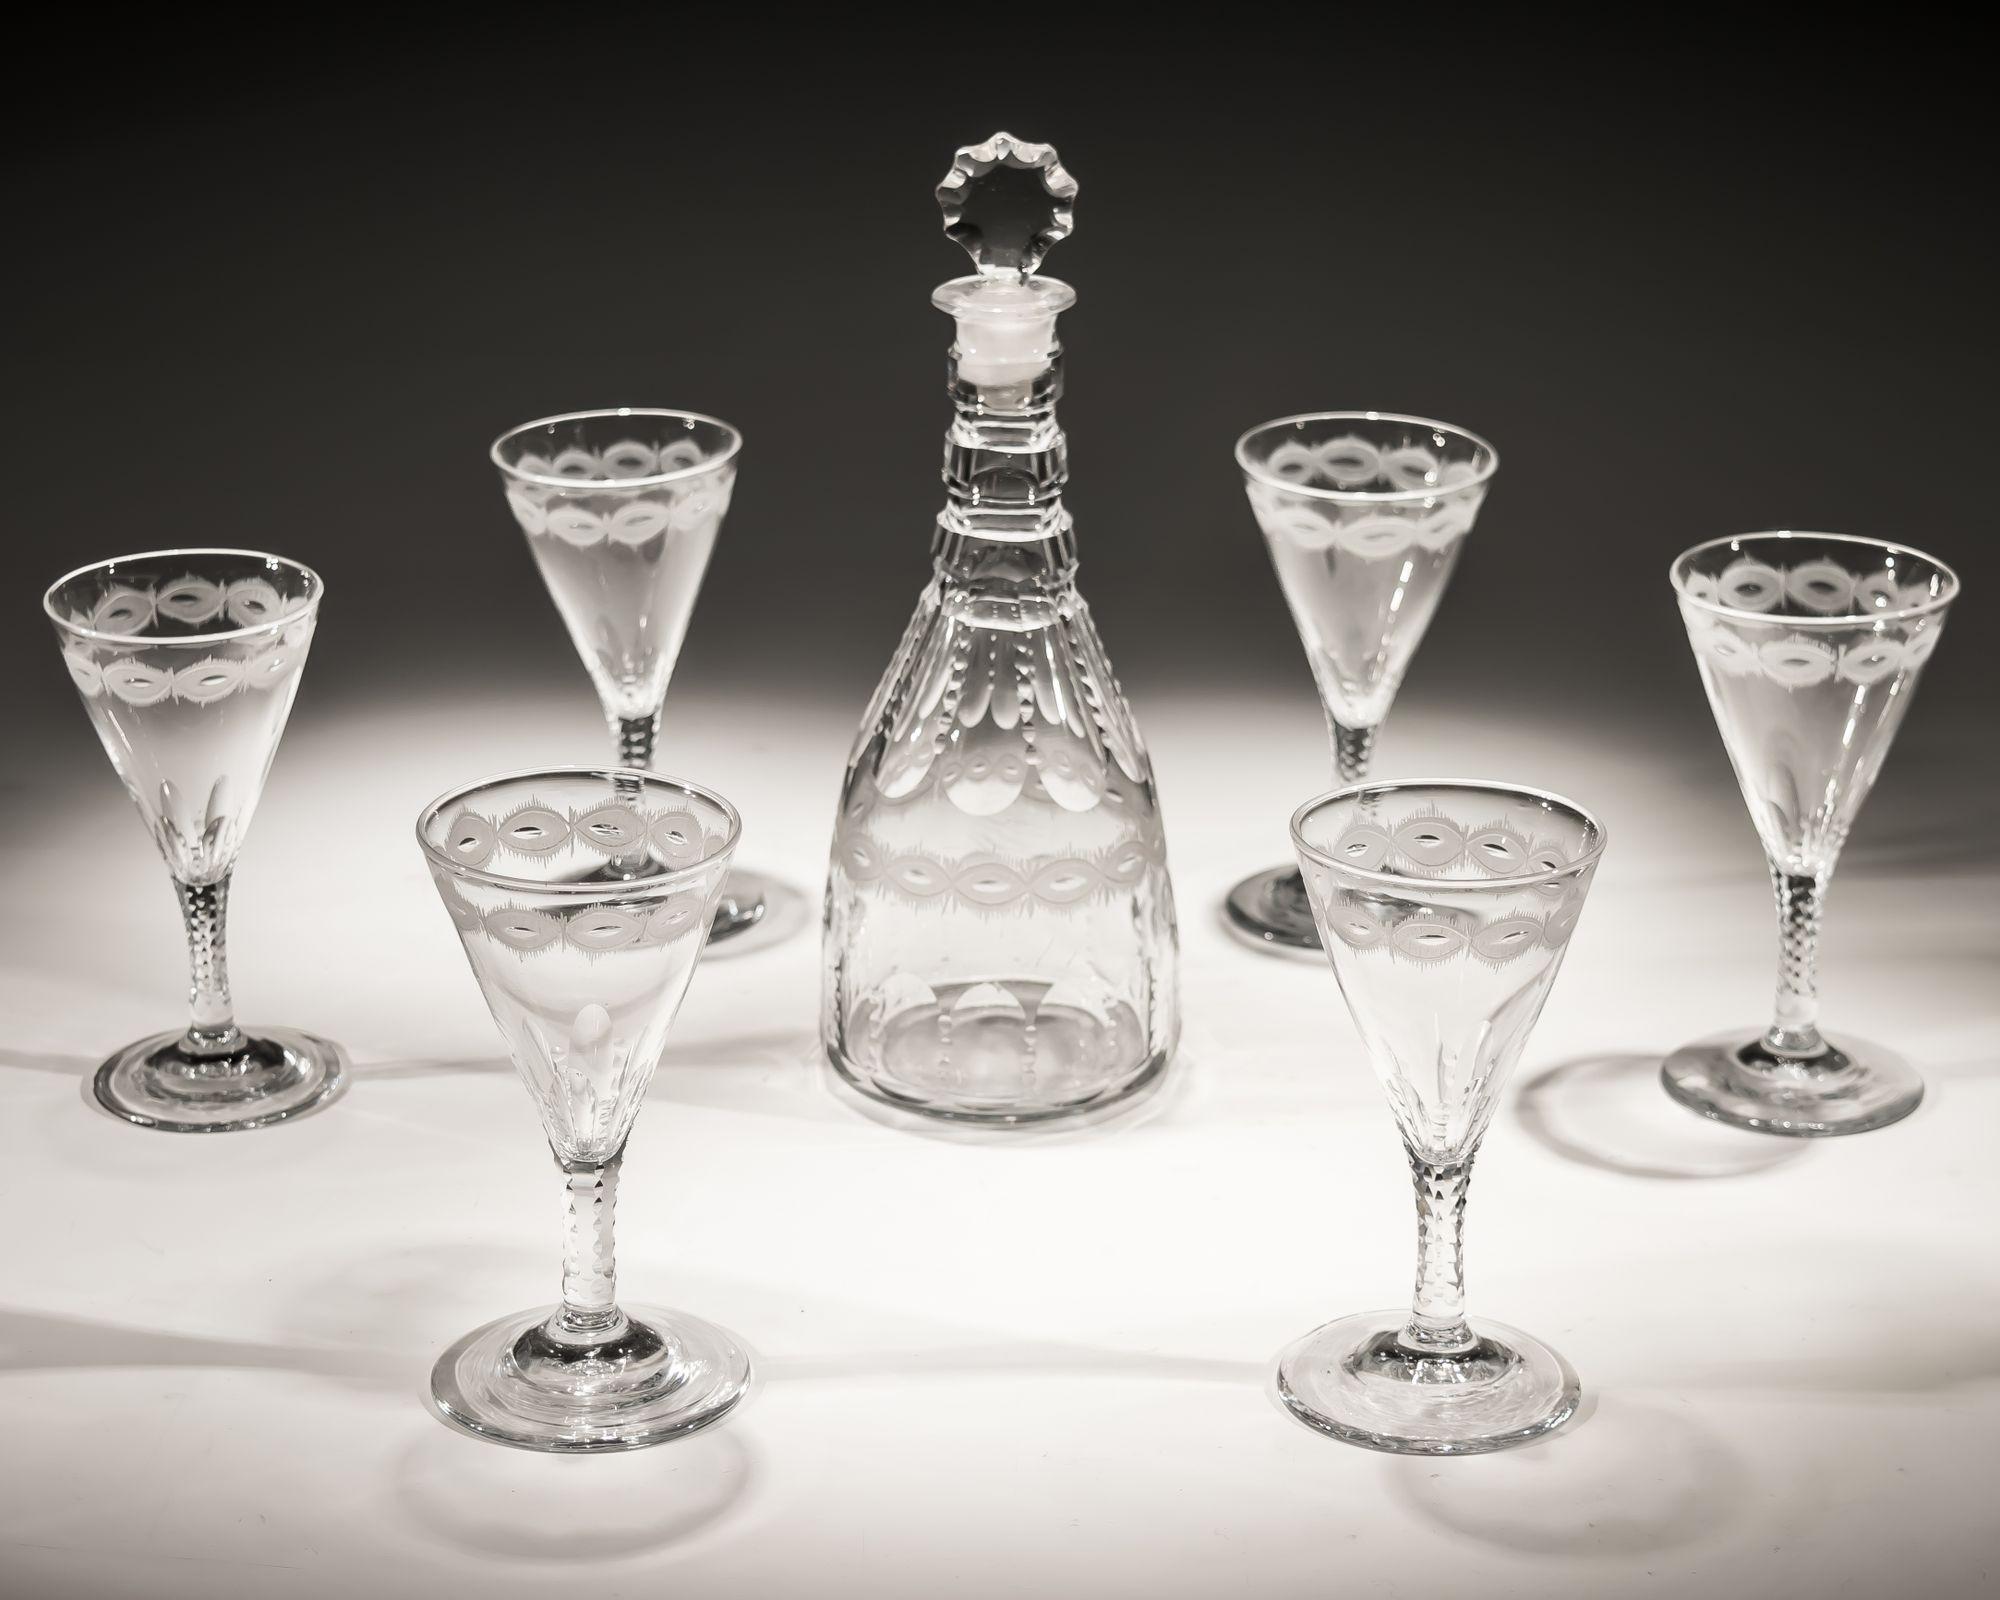 Eine Spirituosenkaraffe mit Schliff und Gravur mit sechs dazugehörigen Gläsern.

GLÄSER

HÖHE 13cm (5 1/4